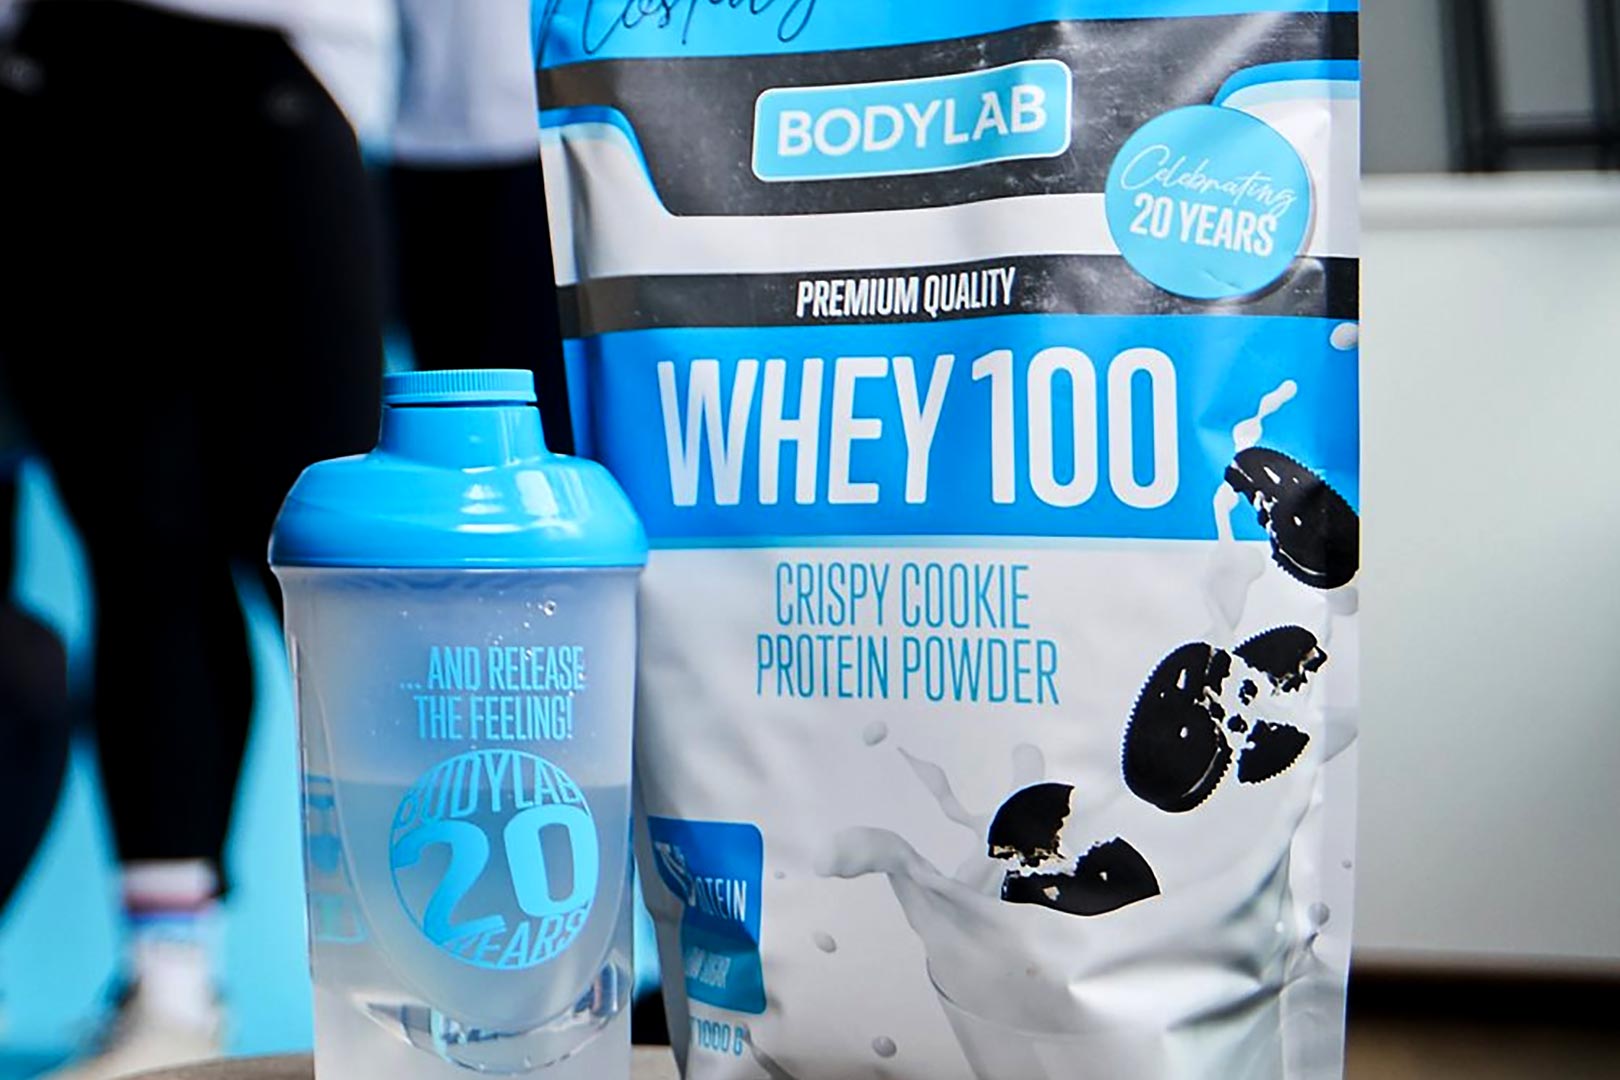 Bodylab Resurrects Crispy Cookie Whey 100